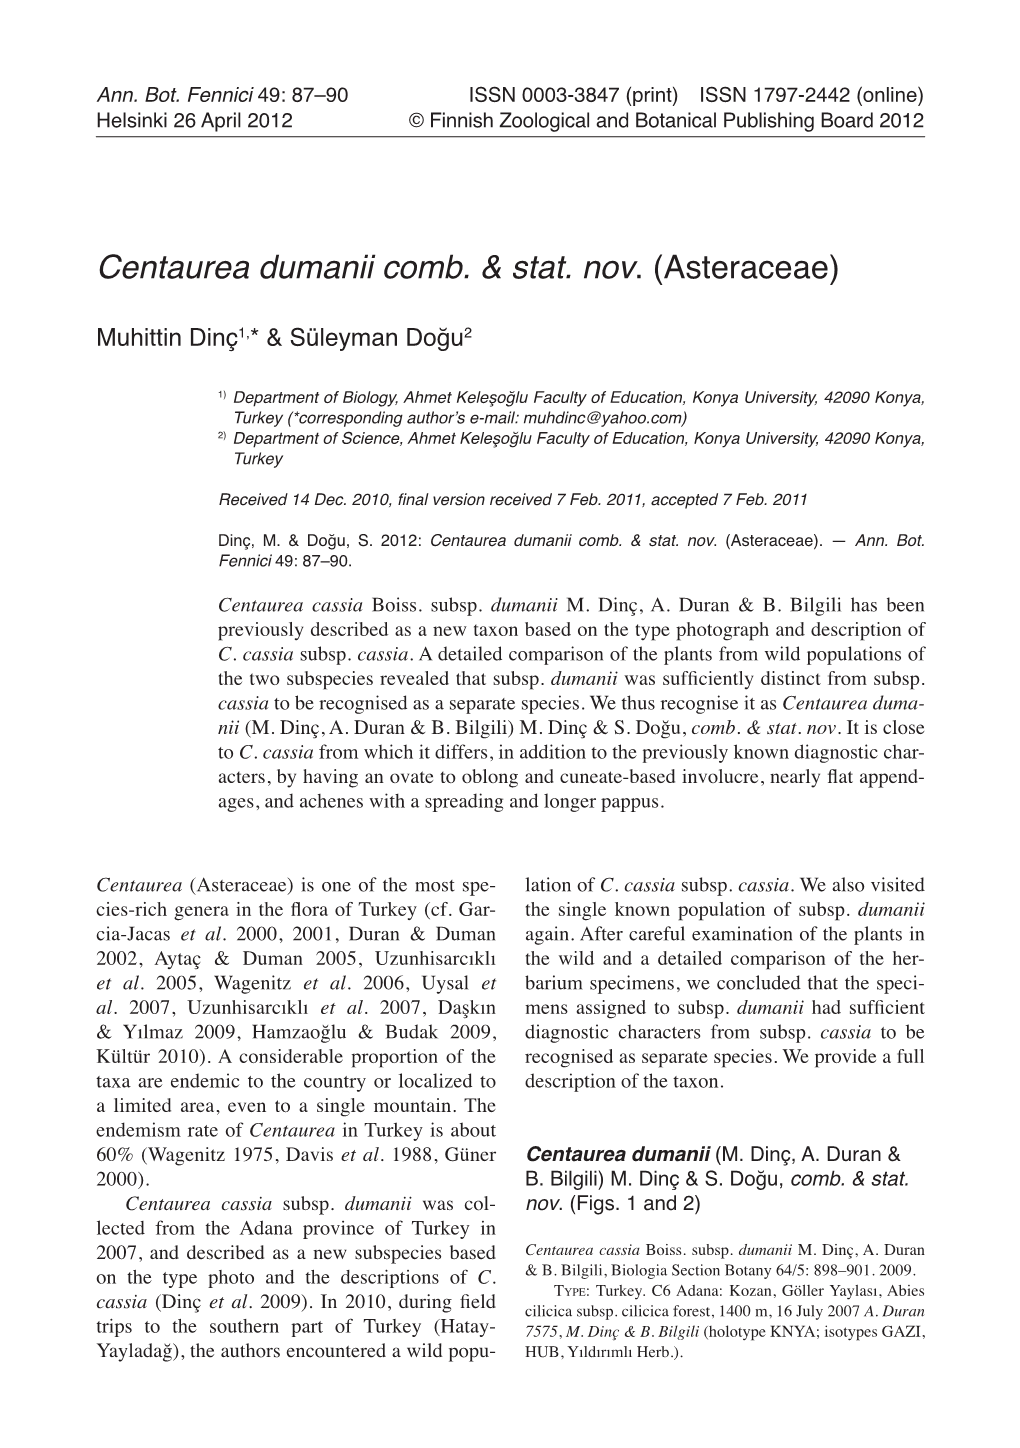 Centaurea Dumanii Comb. & Stat. Nov . (Asteraceae)